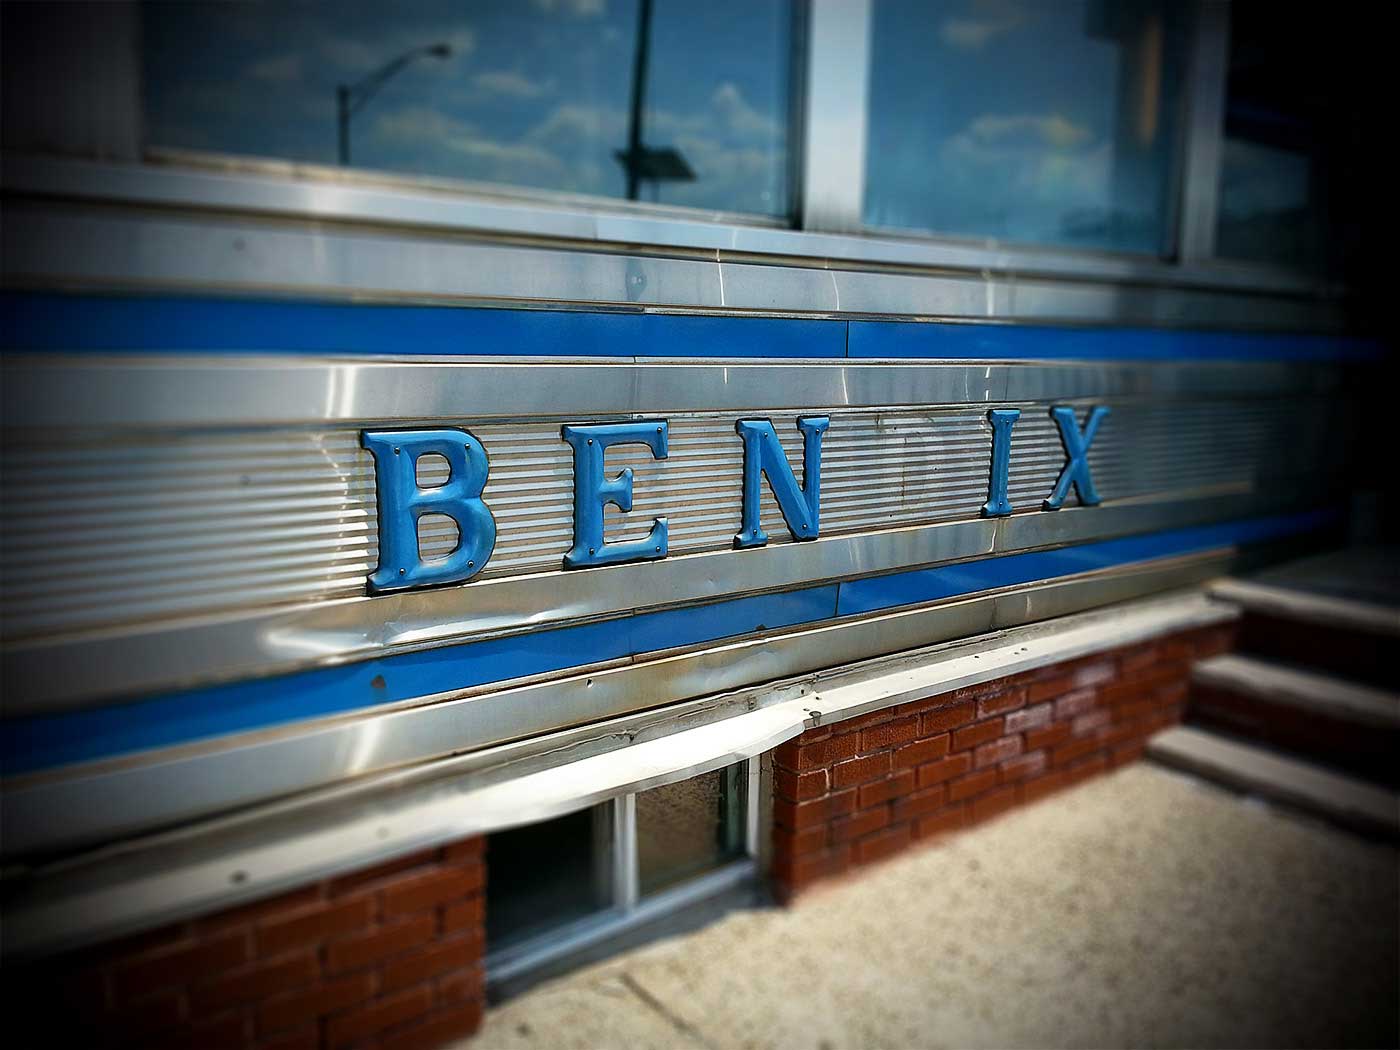 bendix diner photo ©2015 bret wills